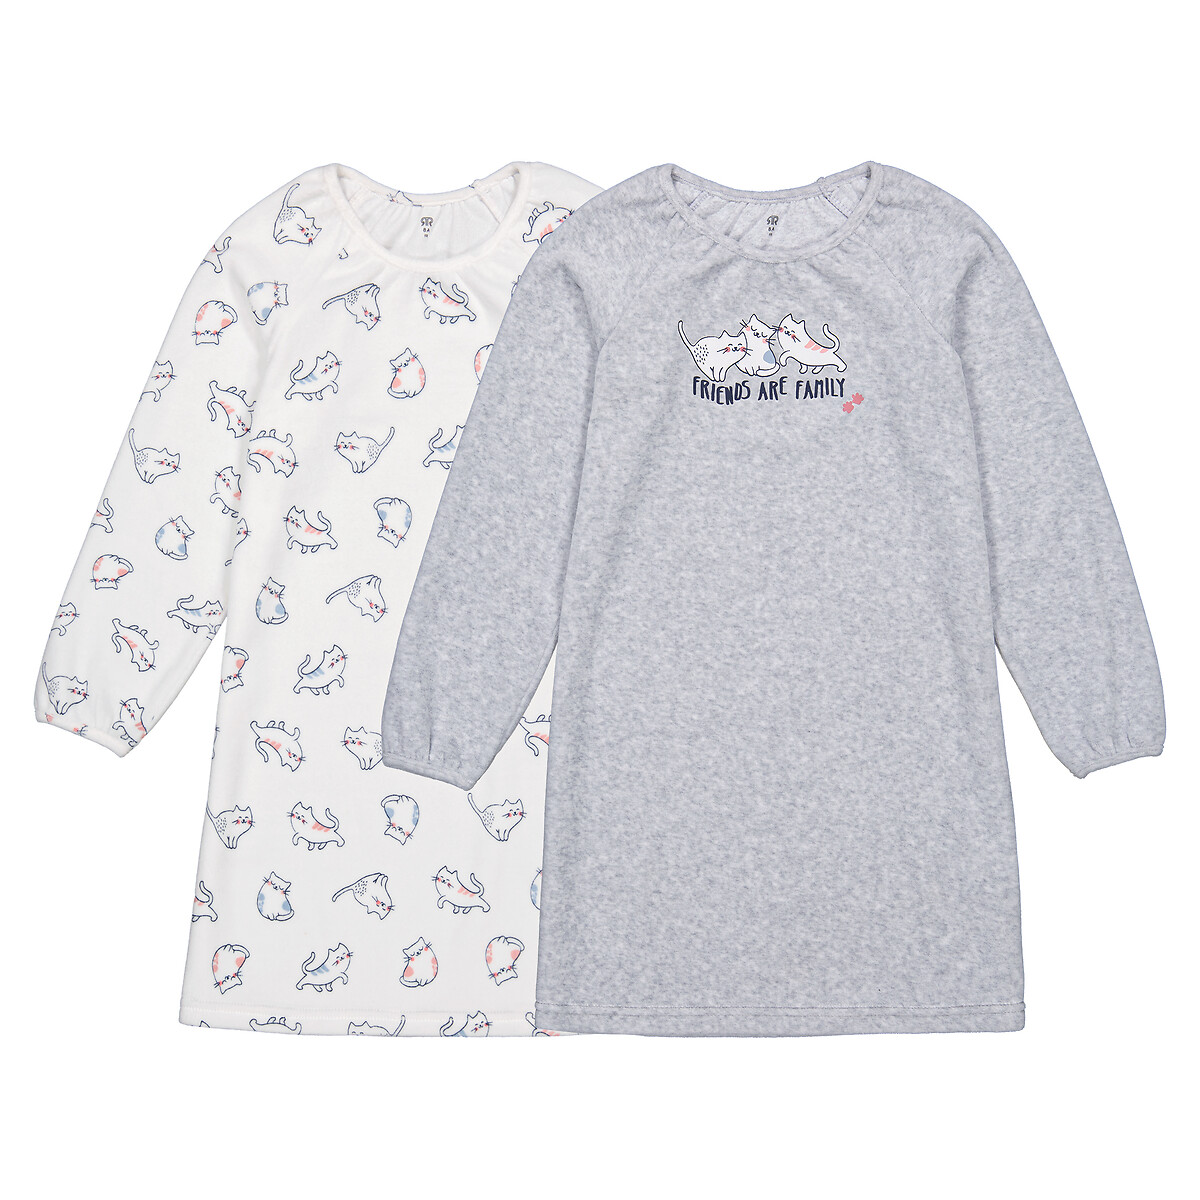 Комплект из двух ночных рубашек из велюра с принтом кошки 4 года - 102 см бежевый комплект из двух раздельных пижам из велюра 4 года 102 см бежевый